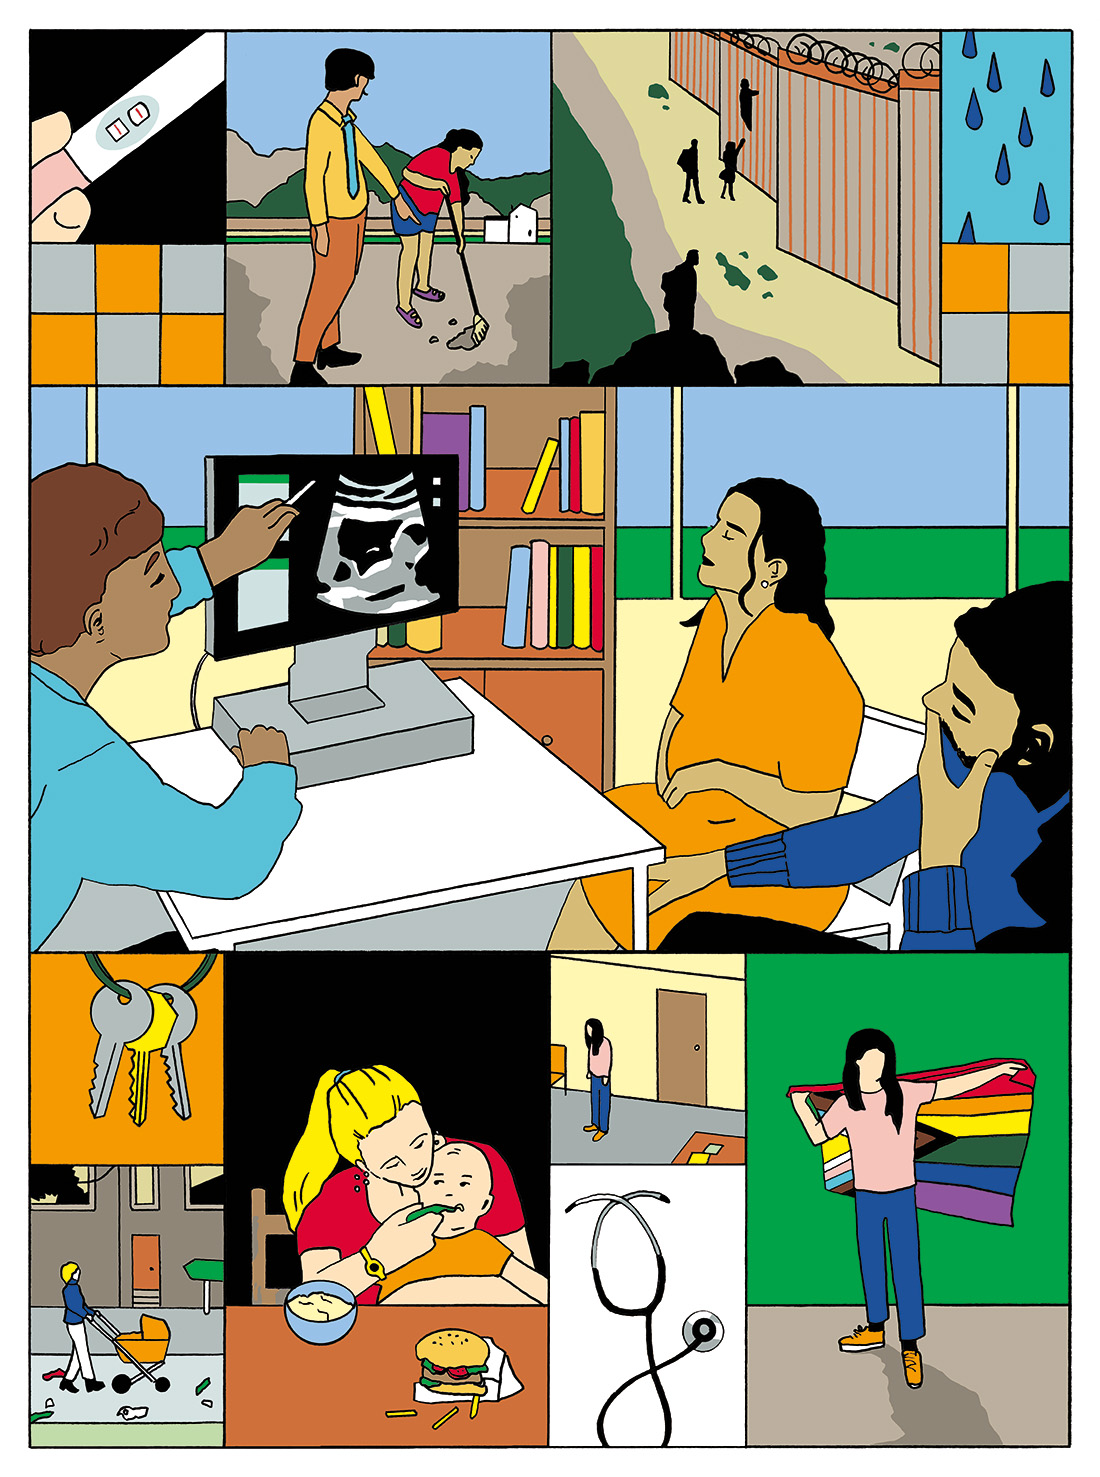 Cartoon depicting various scenes related to health inequities